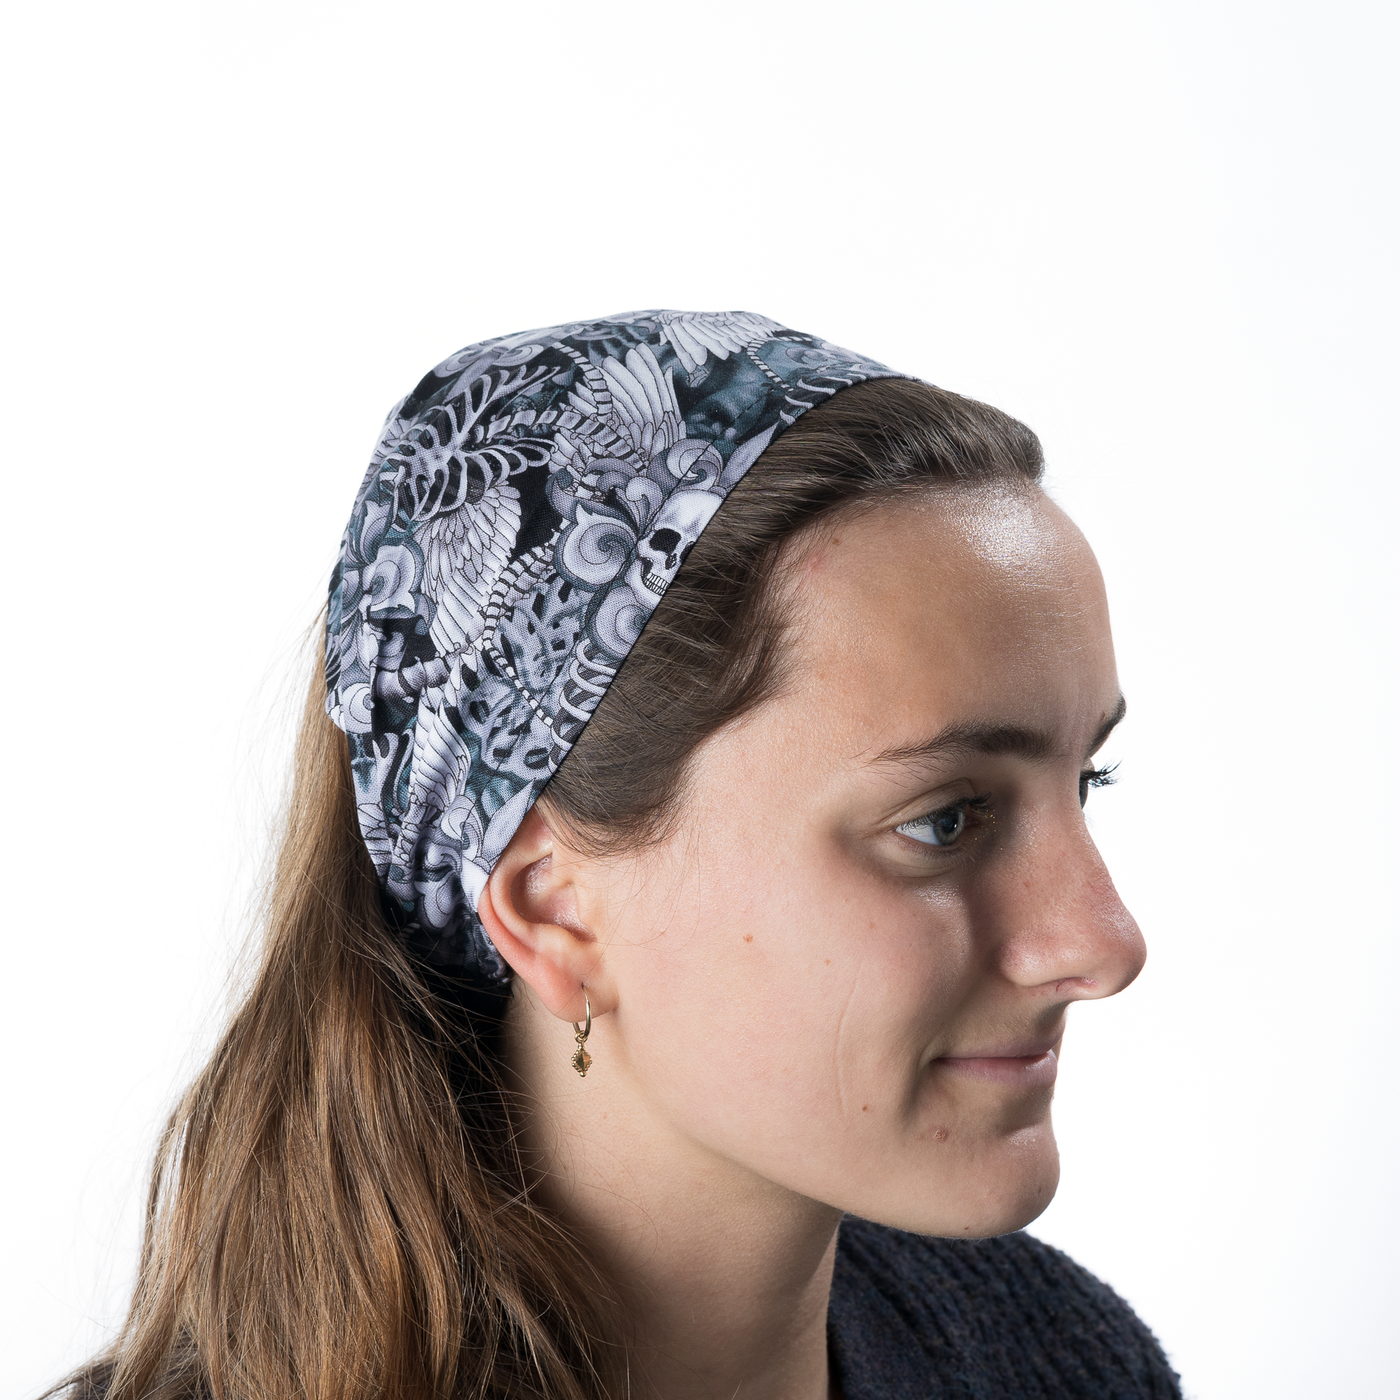 Winged Skull & Vertebrae Headband ~ Handmade from 100% cotton